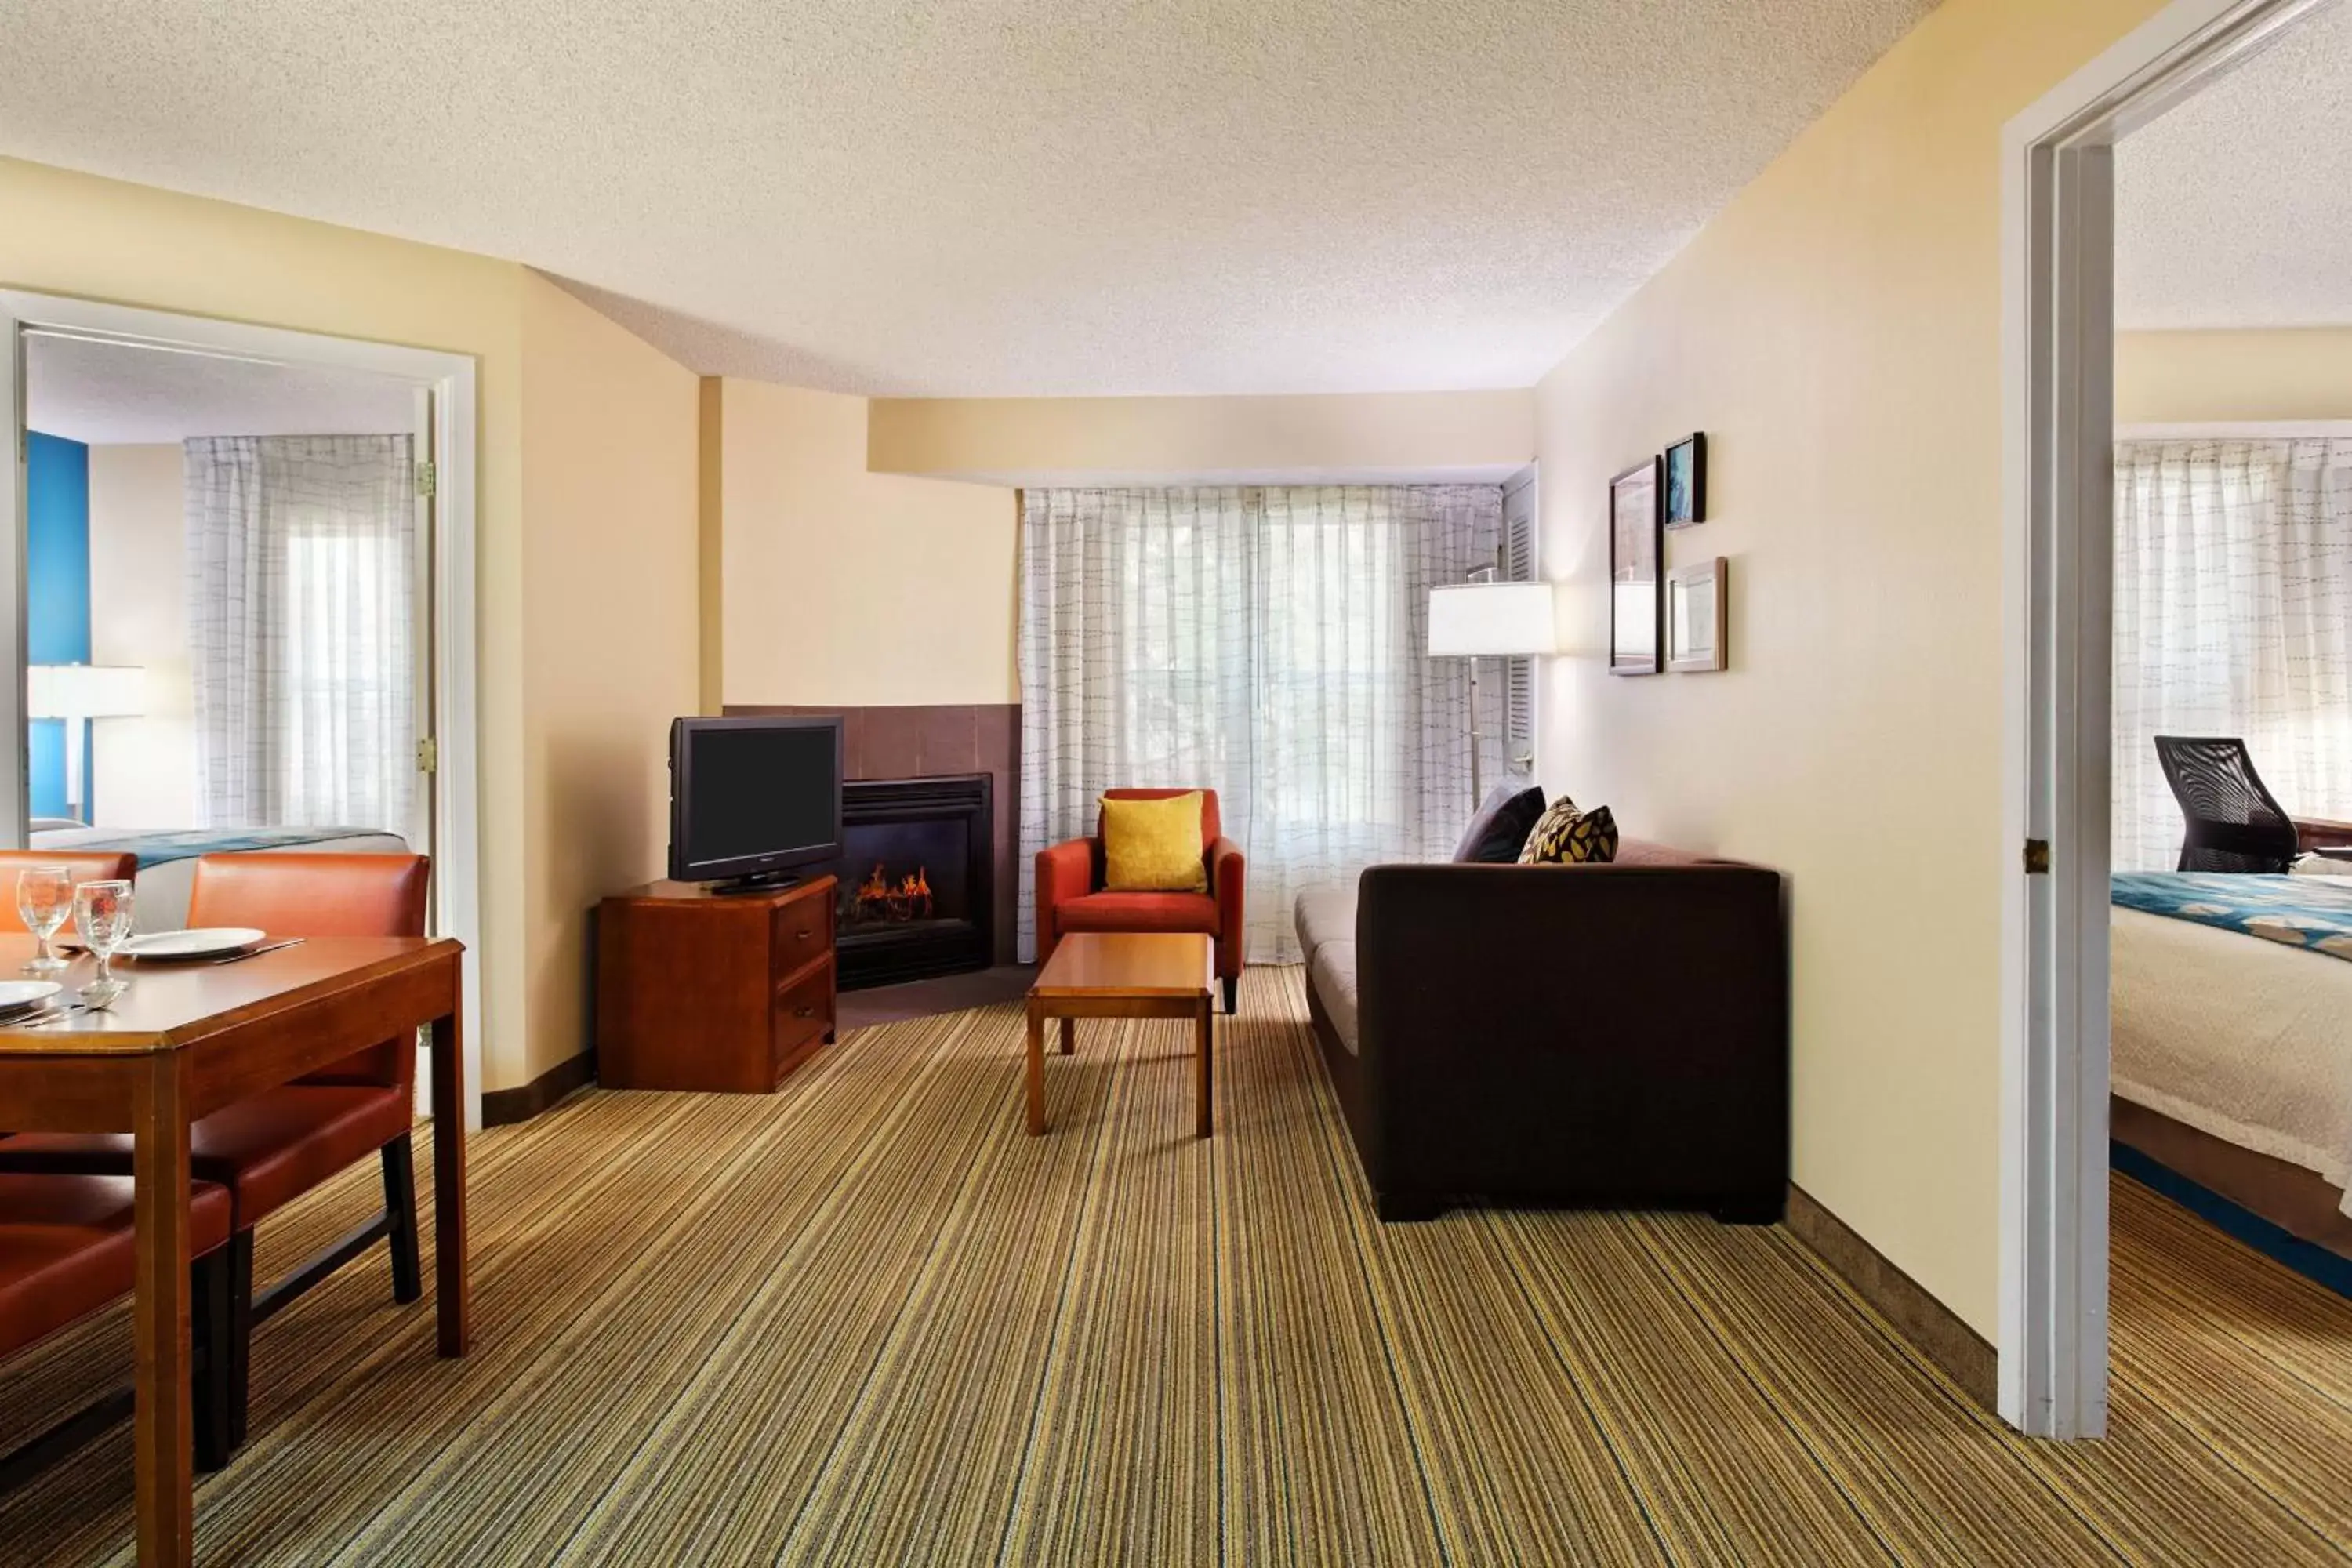 Bedroom, TV/Entertainment Center in Residence Inn Houston Sugar Land/Stafford